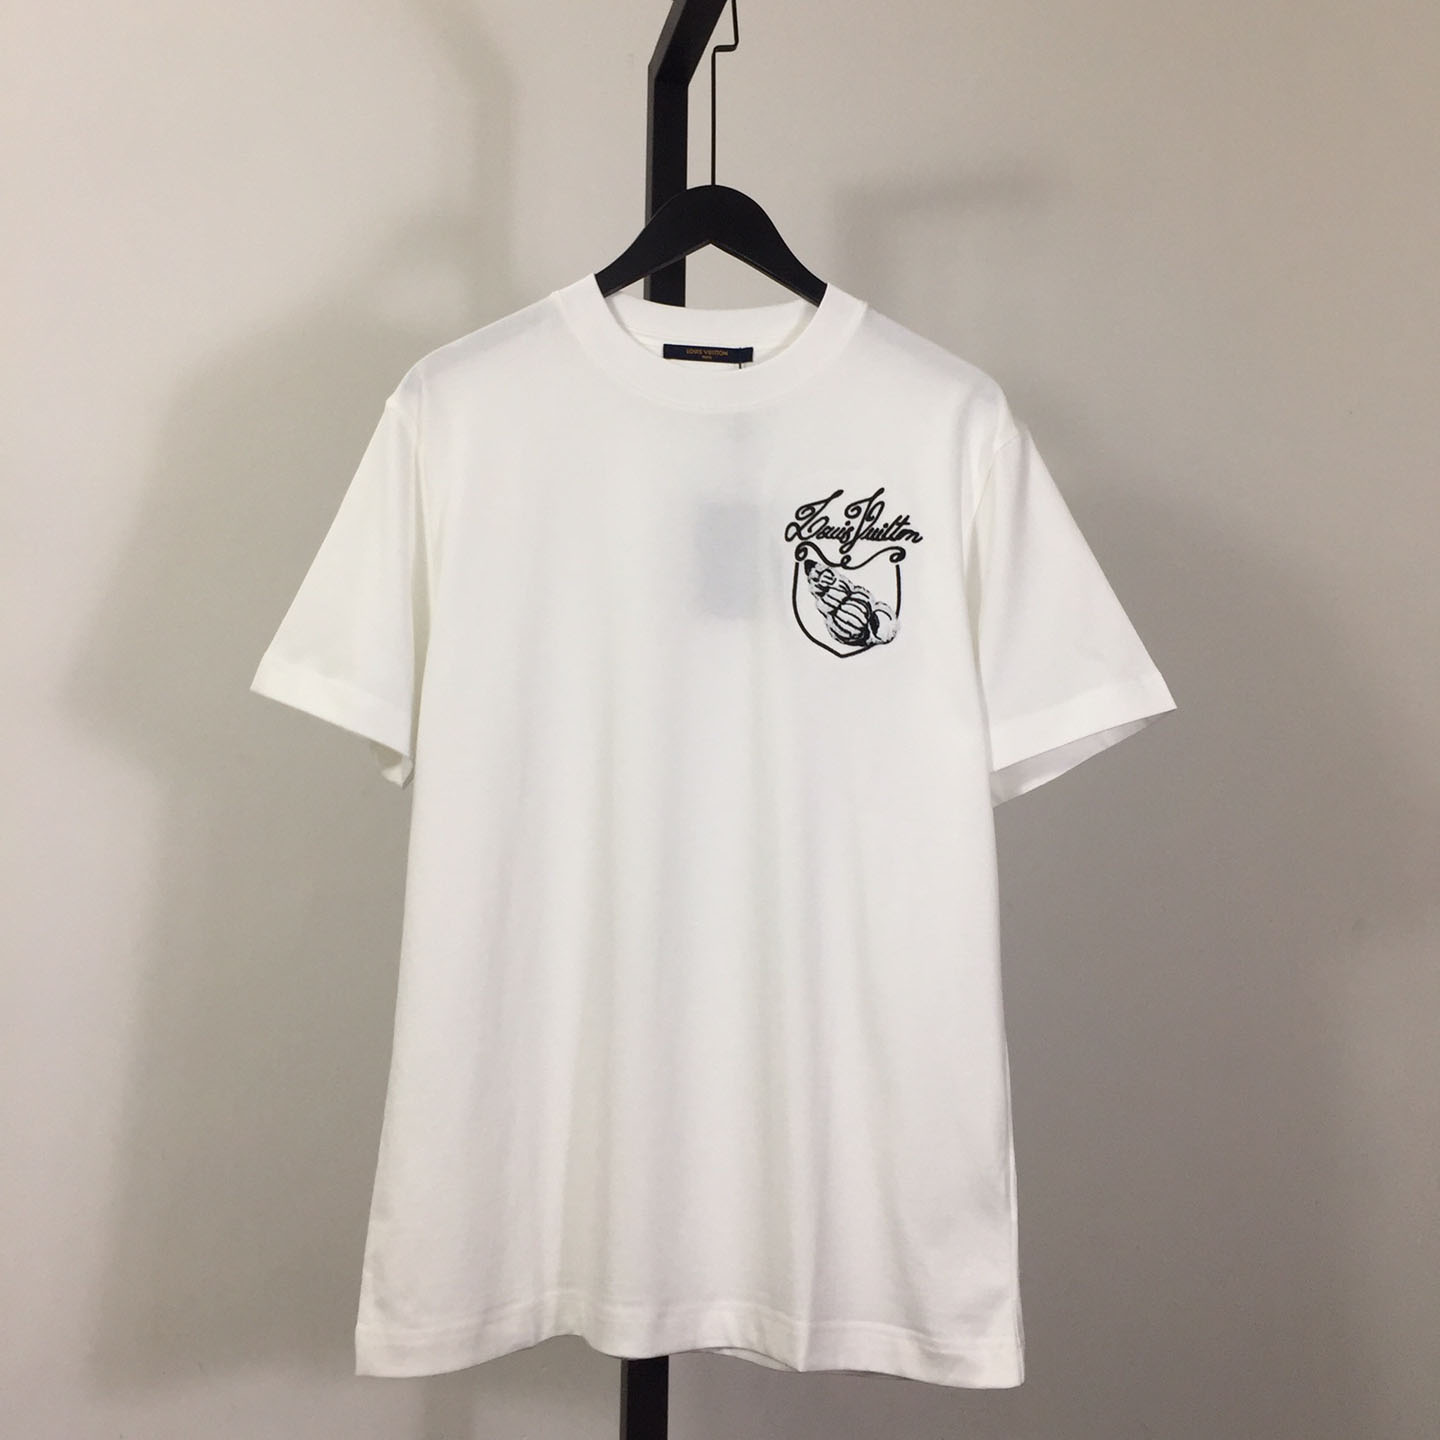 Louis Vuitton Short-Sleeved Cotton T-shirt - PerfectKickZ